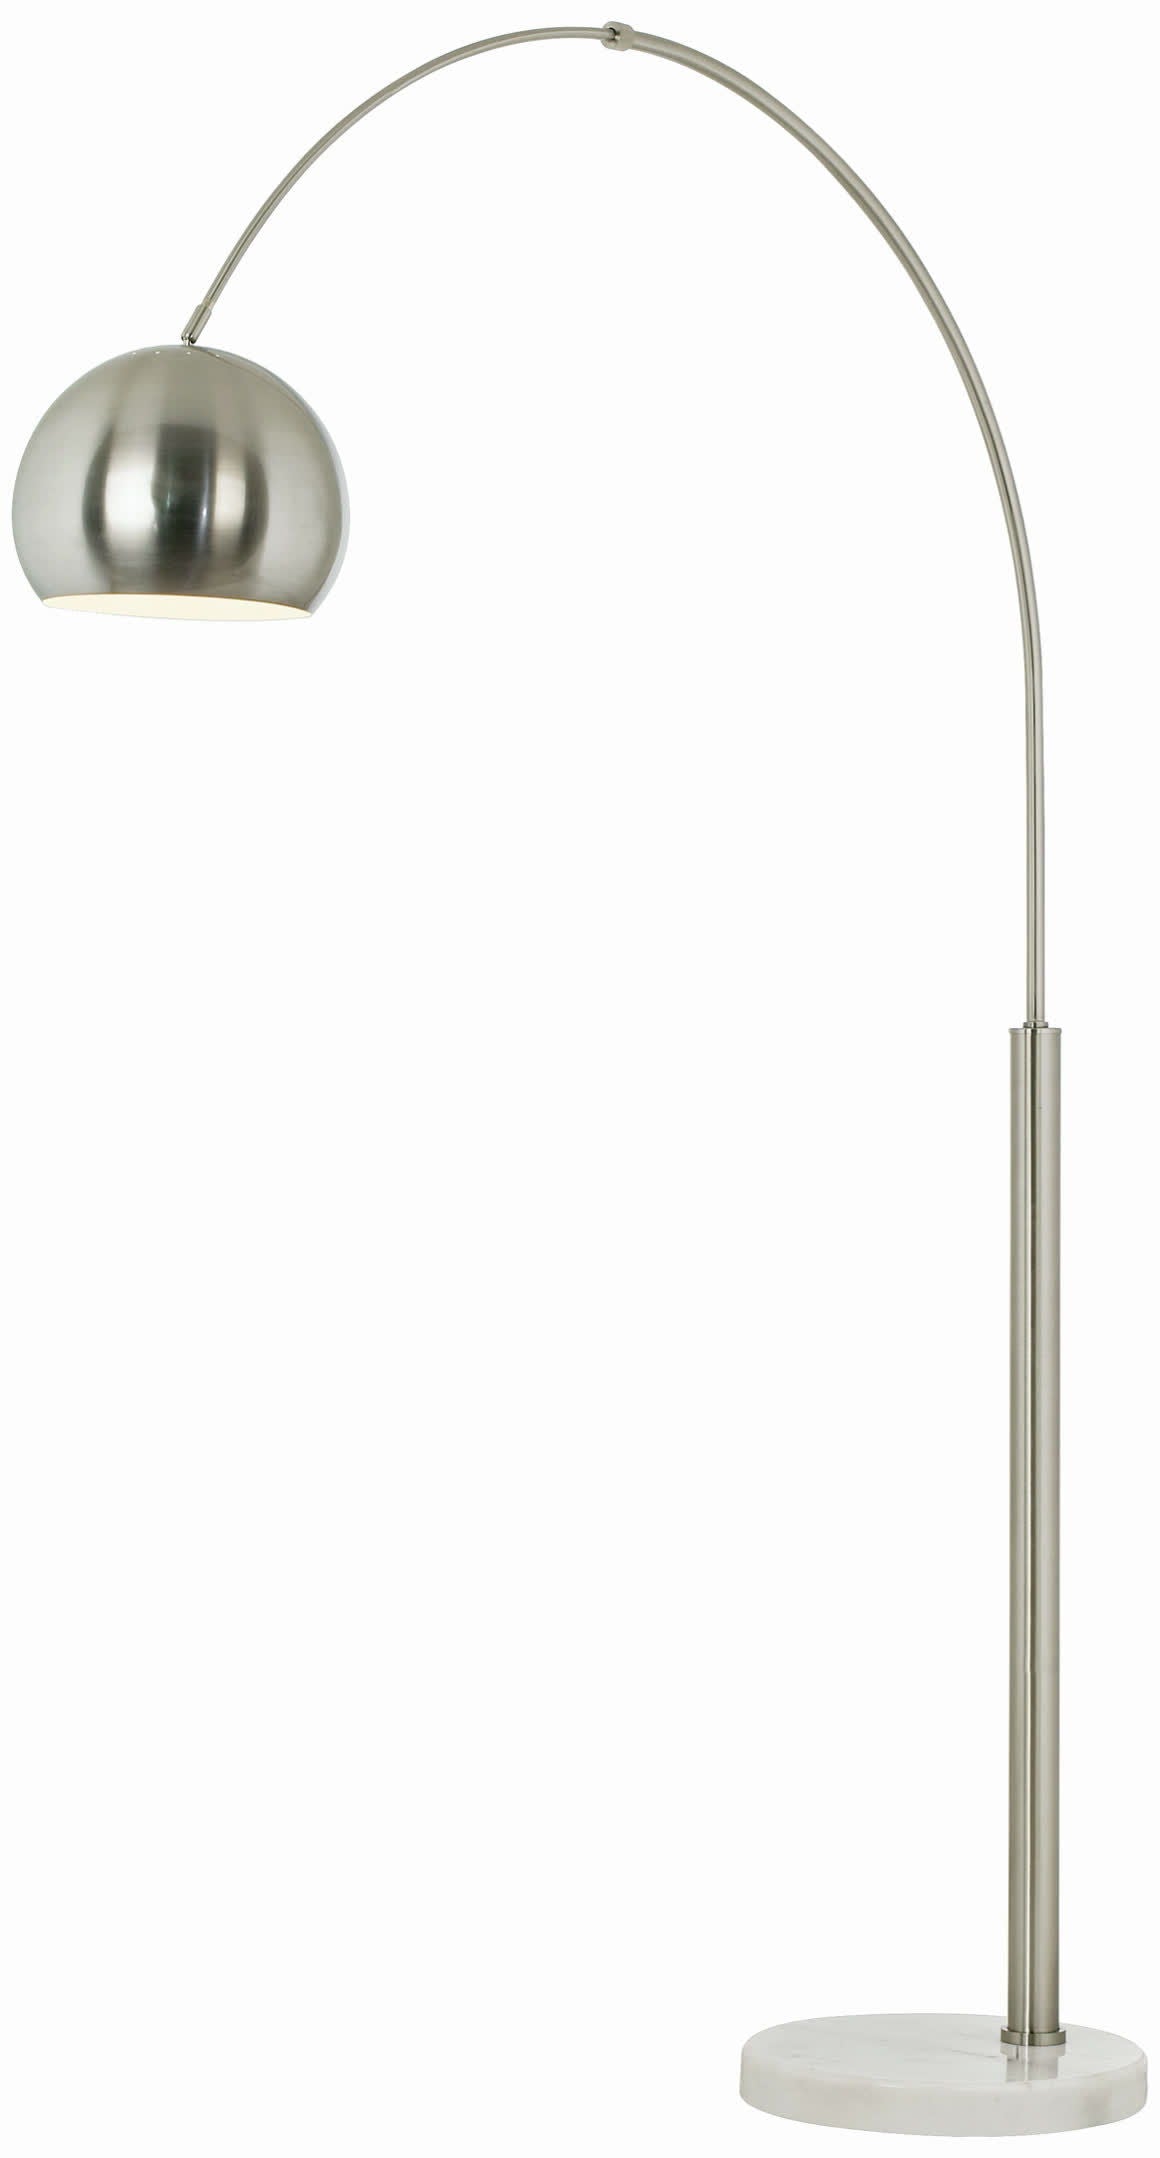 Basque - Arc Lamp - Brushed Nickel